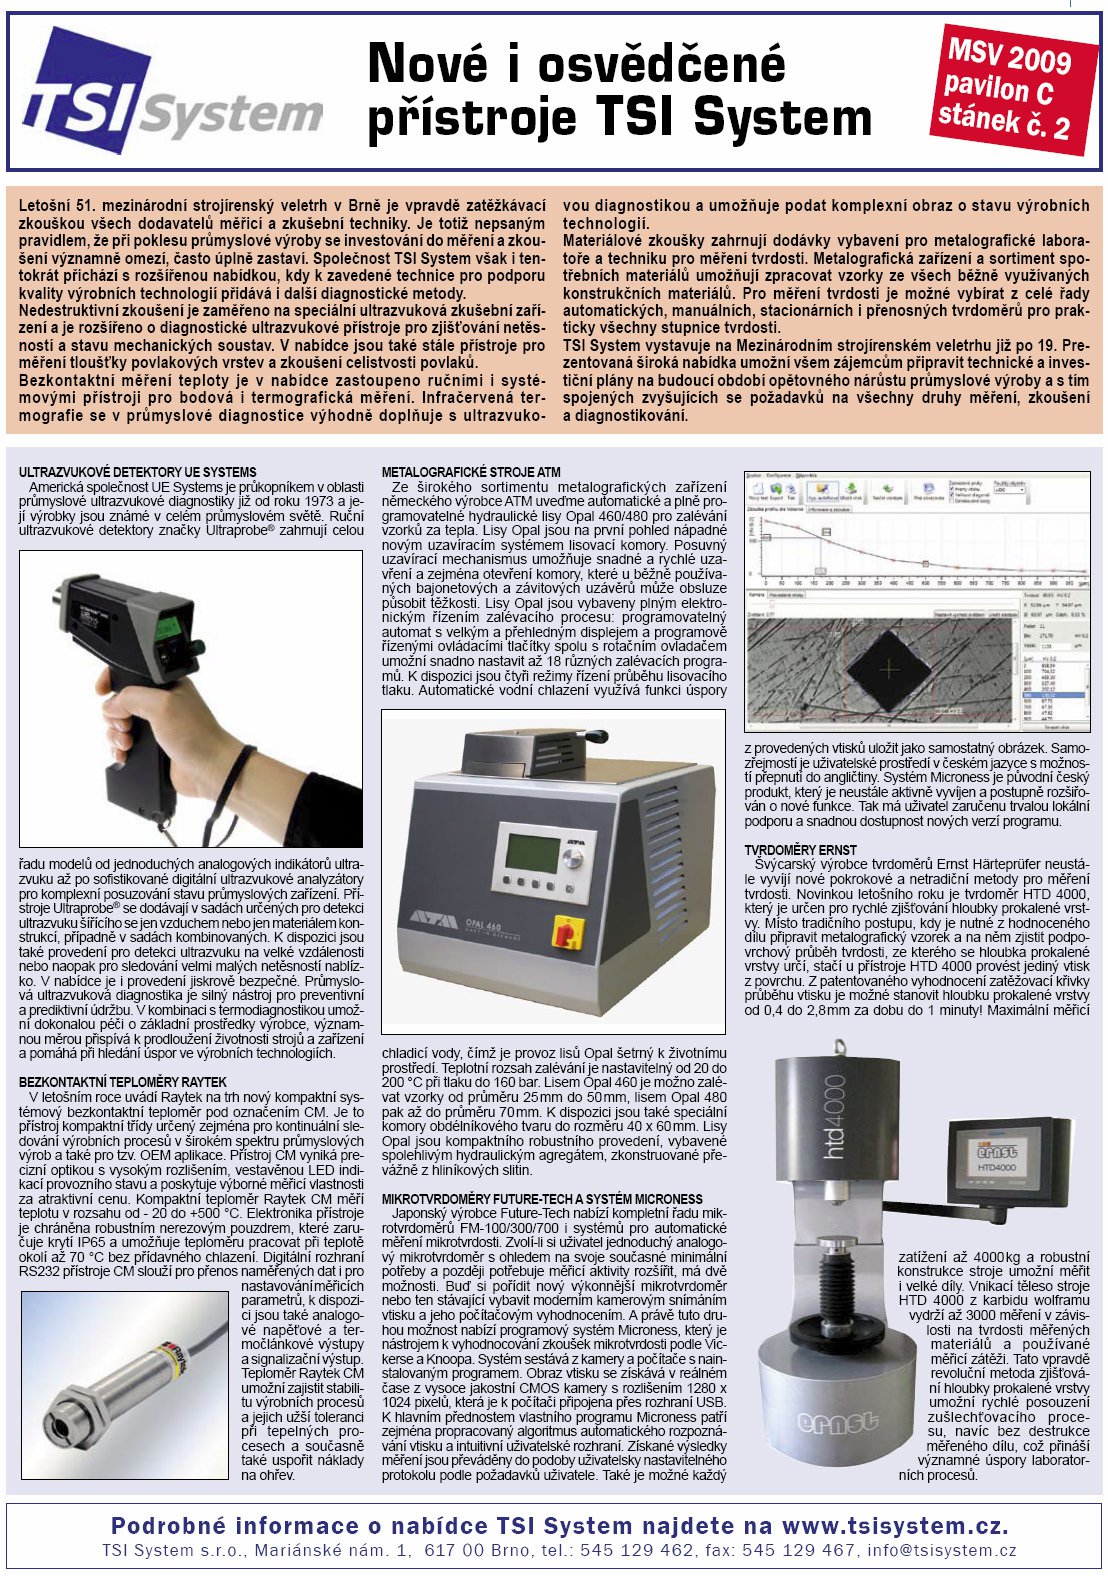 Technický týdeník, č.18 - 2009 - Nové i osvědčené přístroje TSI System